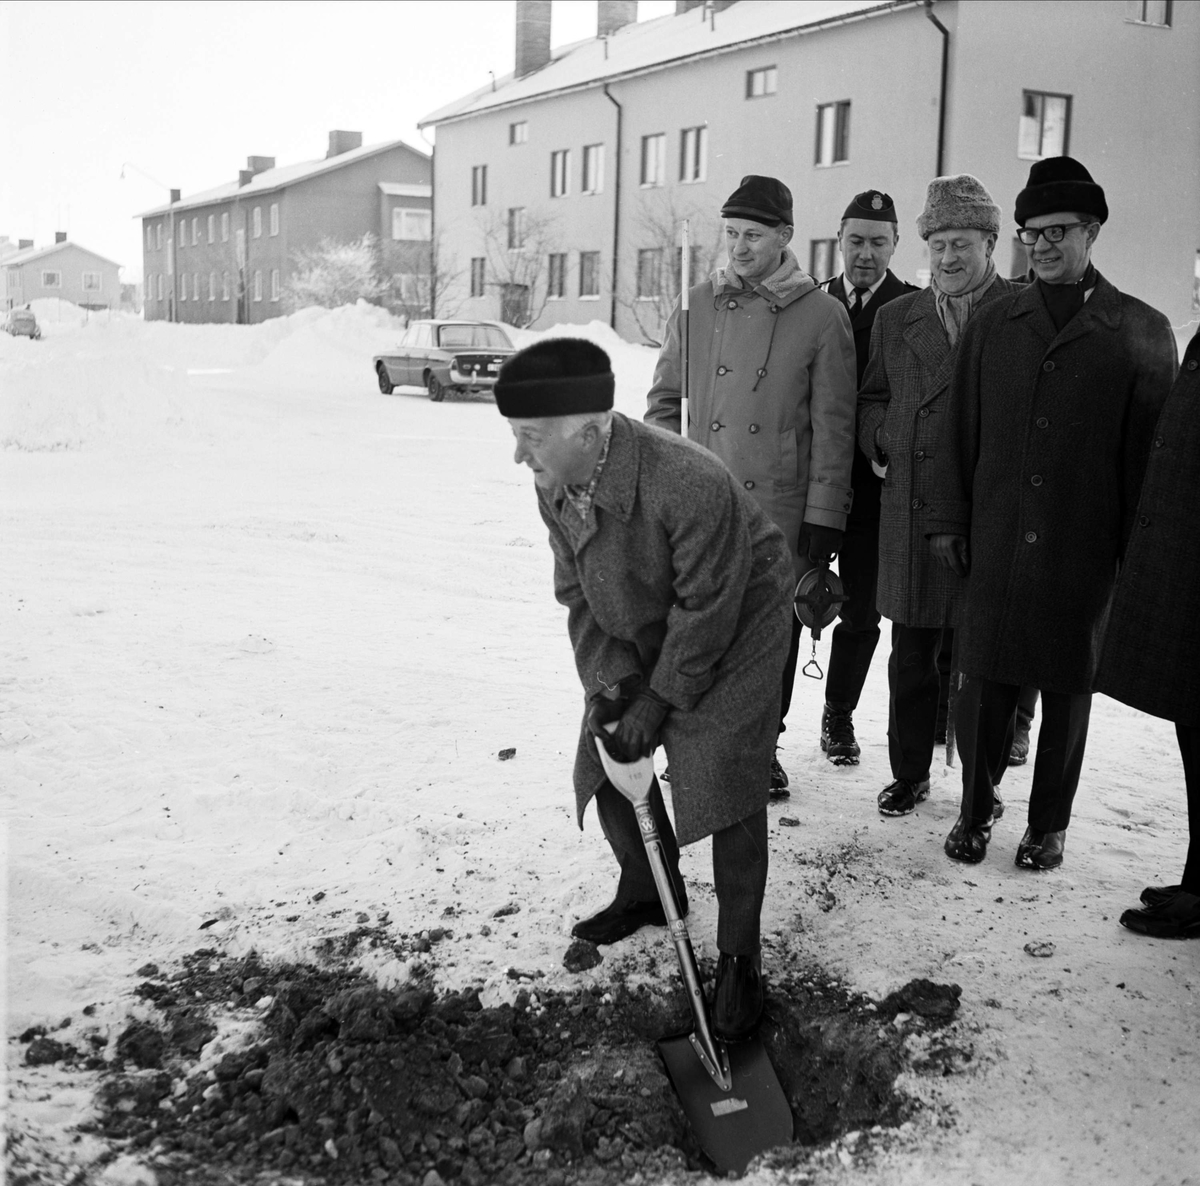 "Första spadtaget på polishusbygget" i Tierp, Uppland, januari 1968